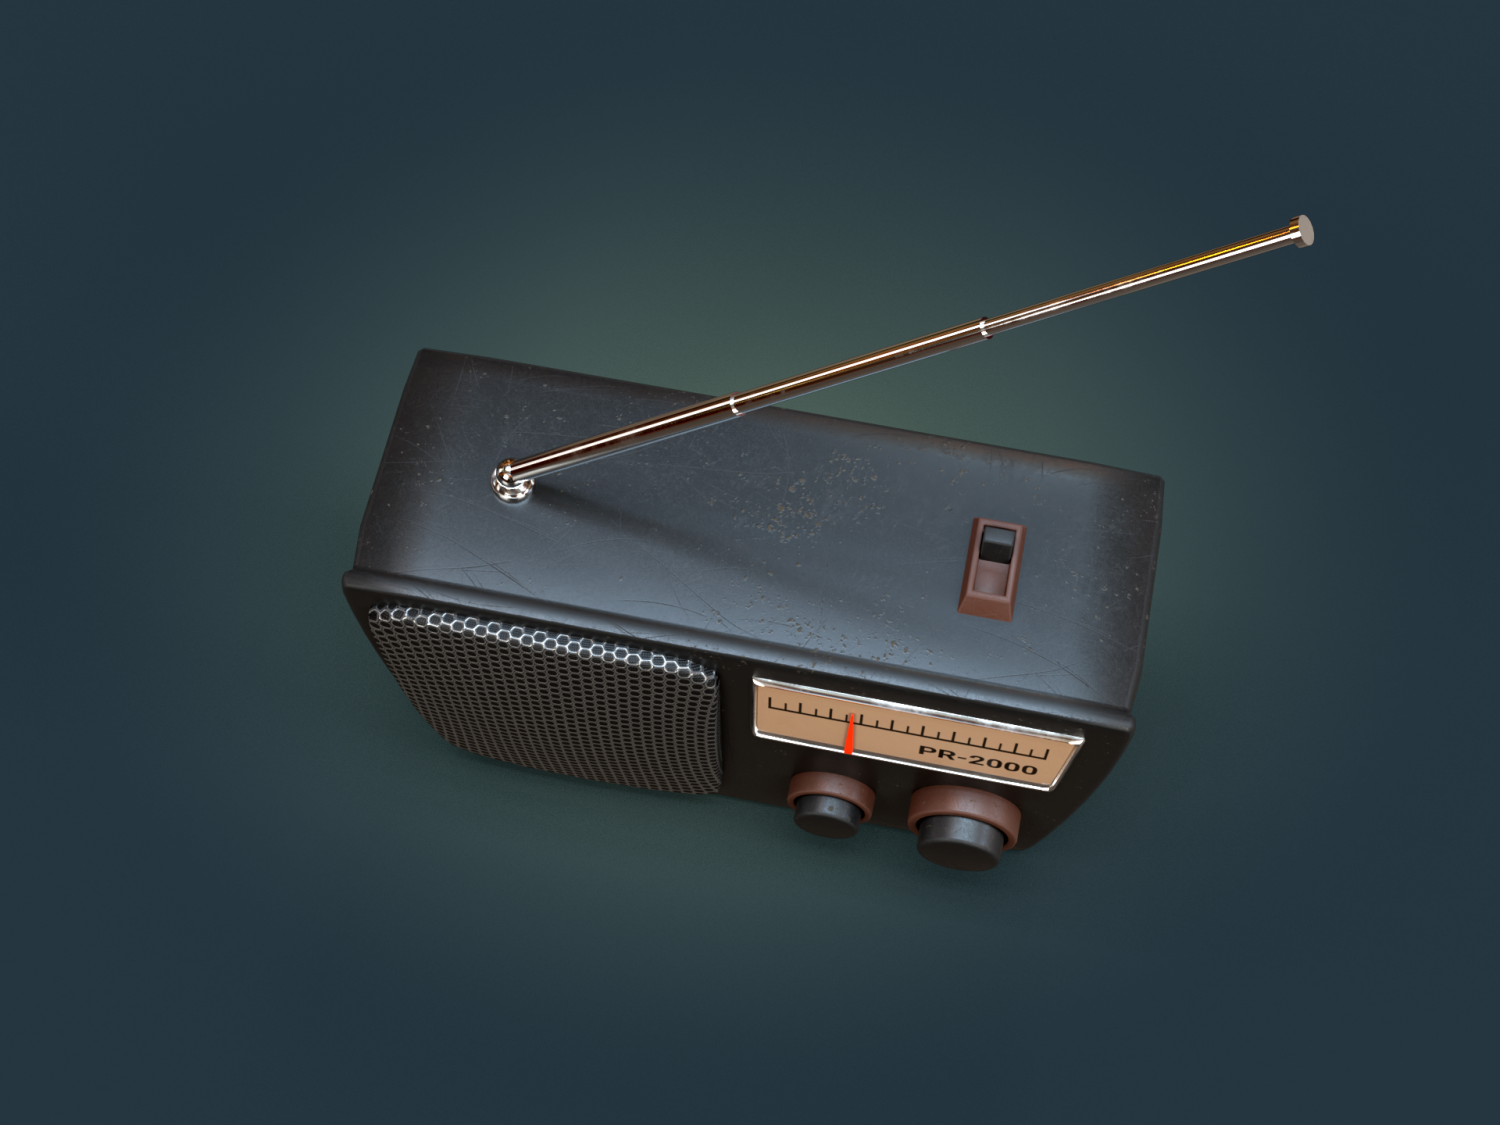 3д модель радио. Radio model